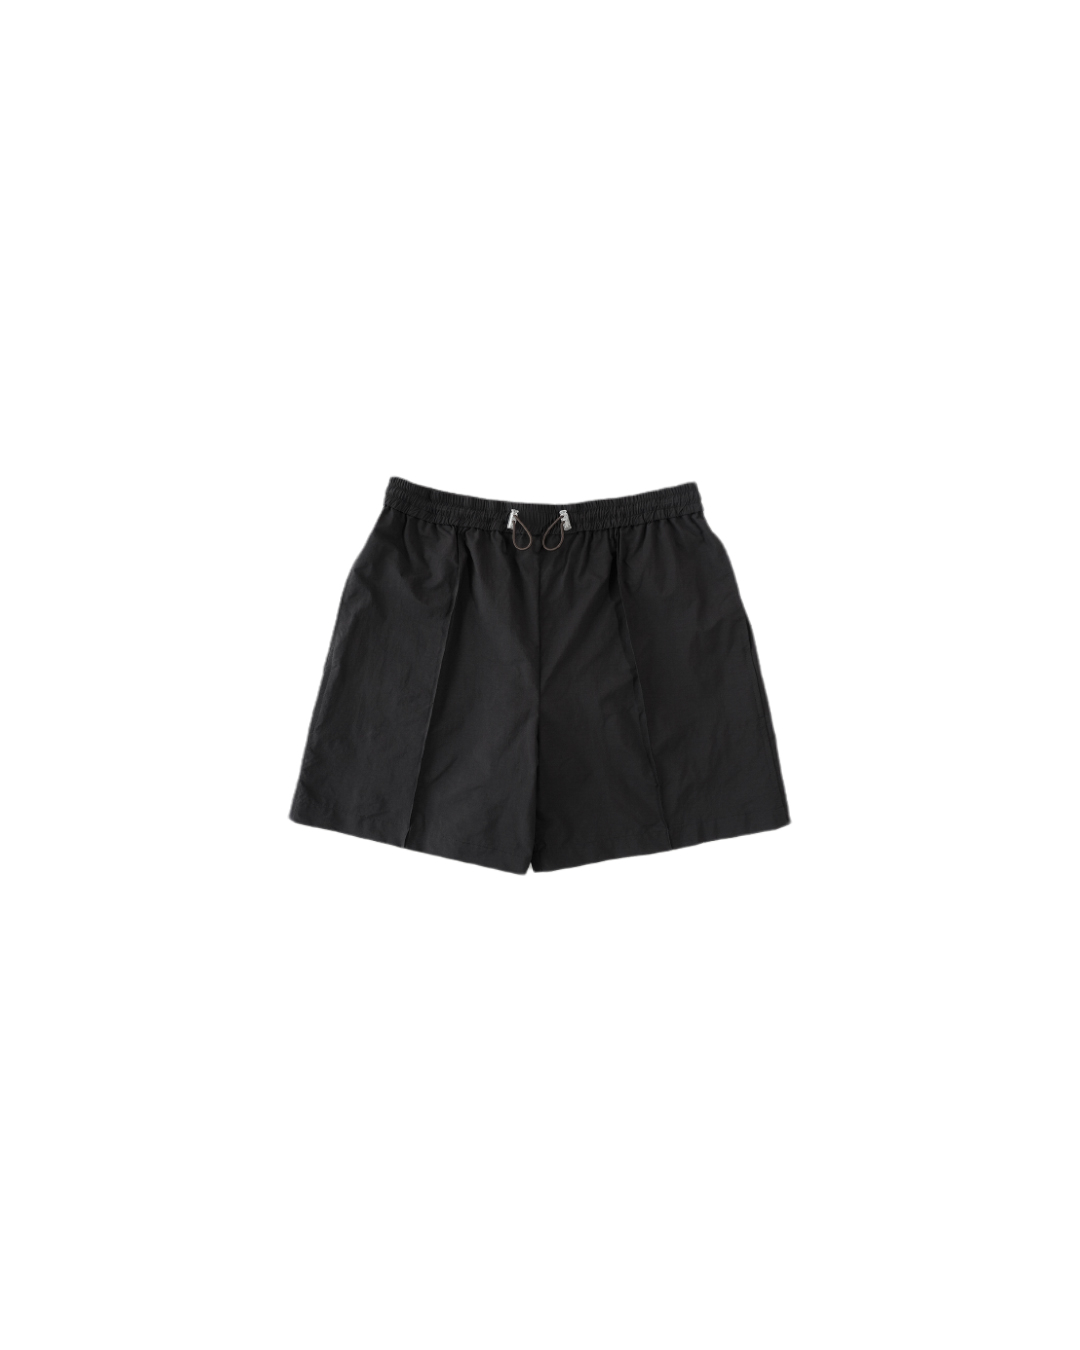 Nylon L/S Shorts (Black)